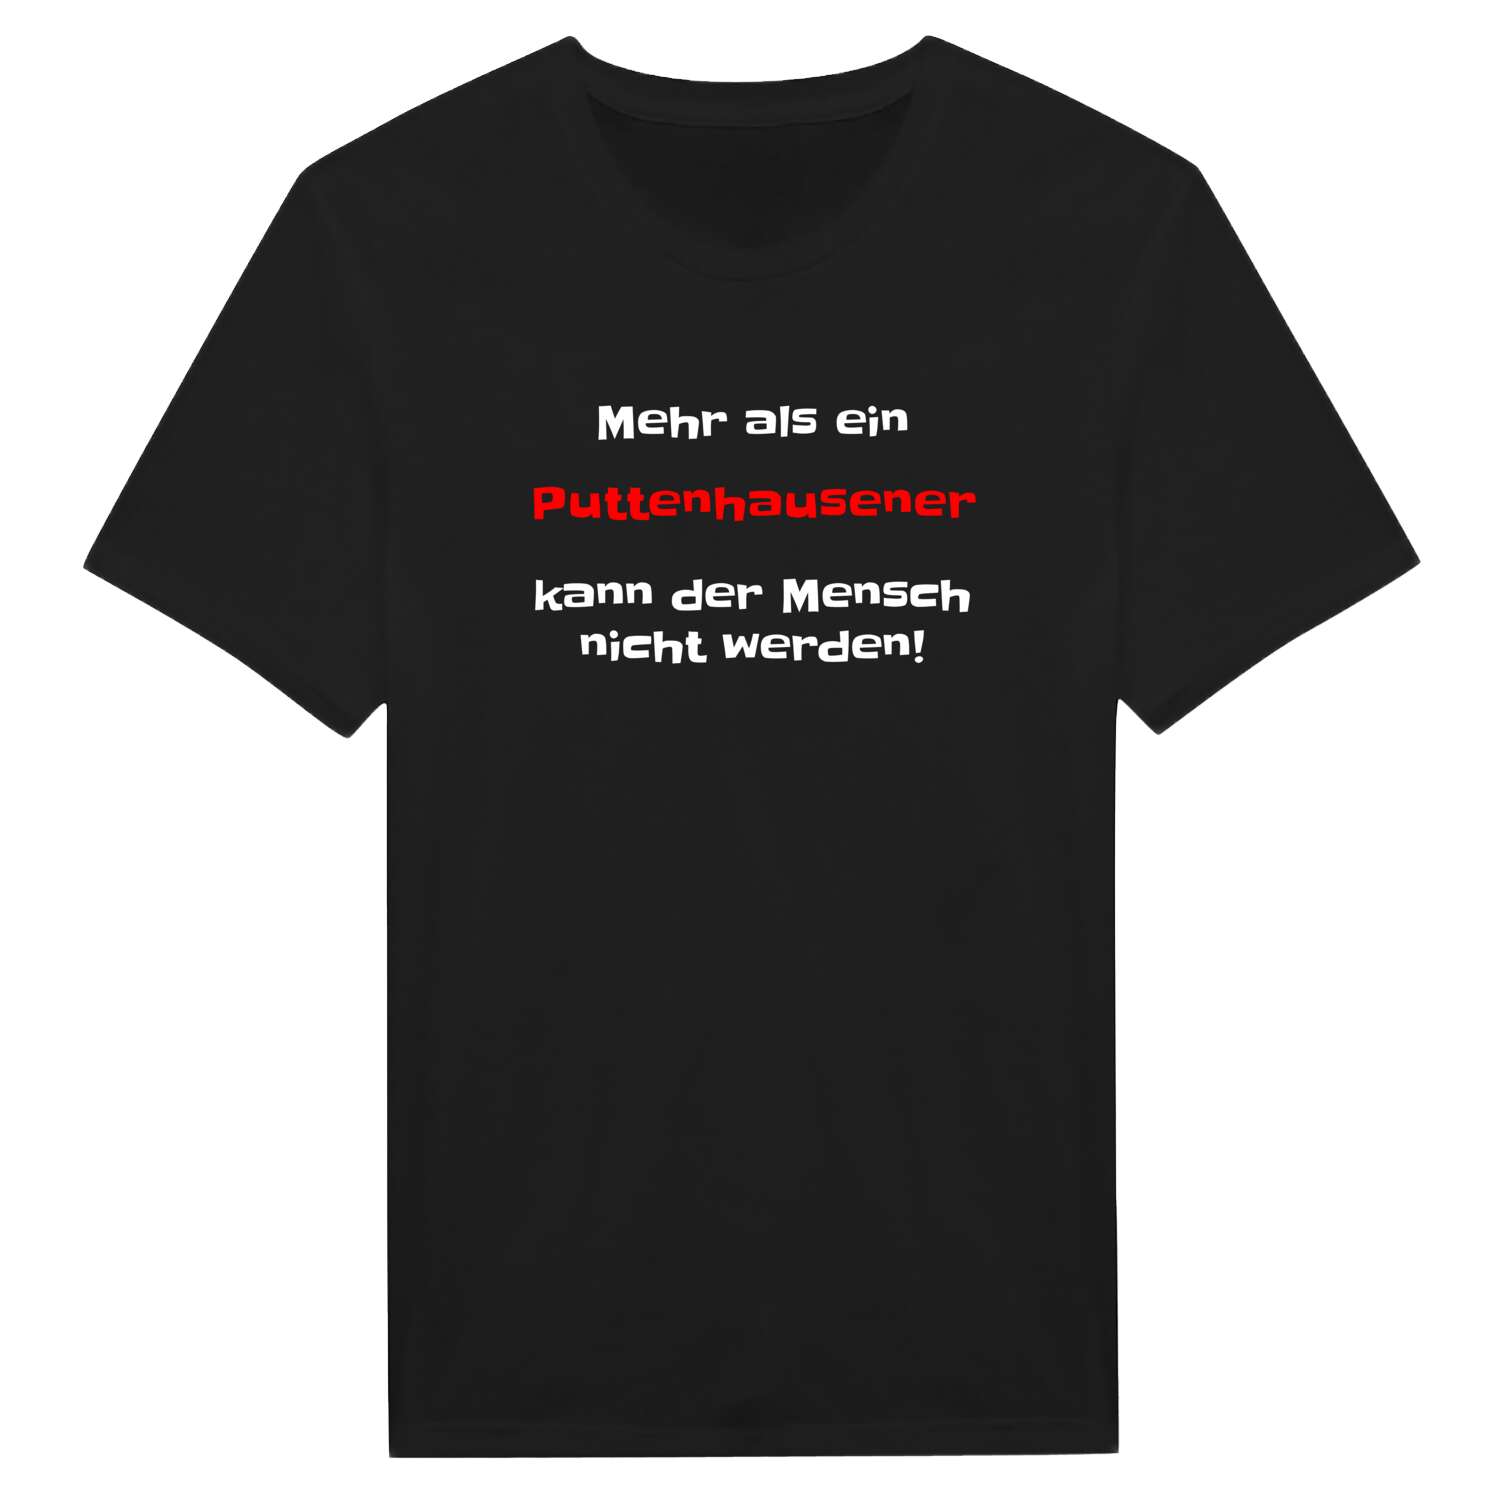 Puttenhausen T-Shirt »Mehr als ein«